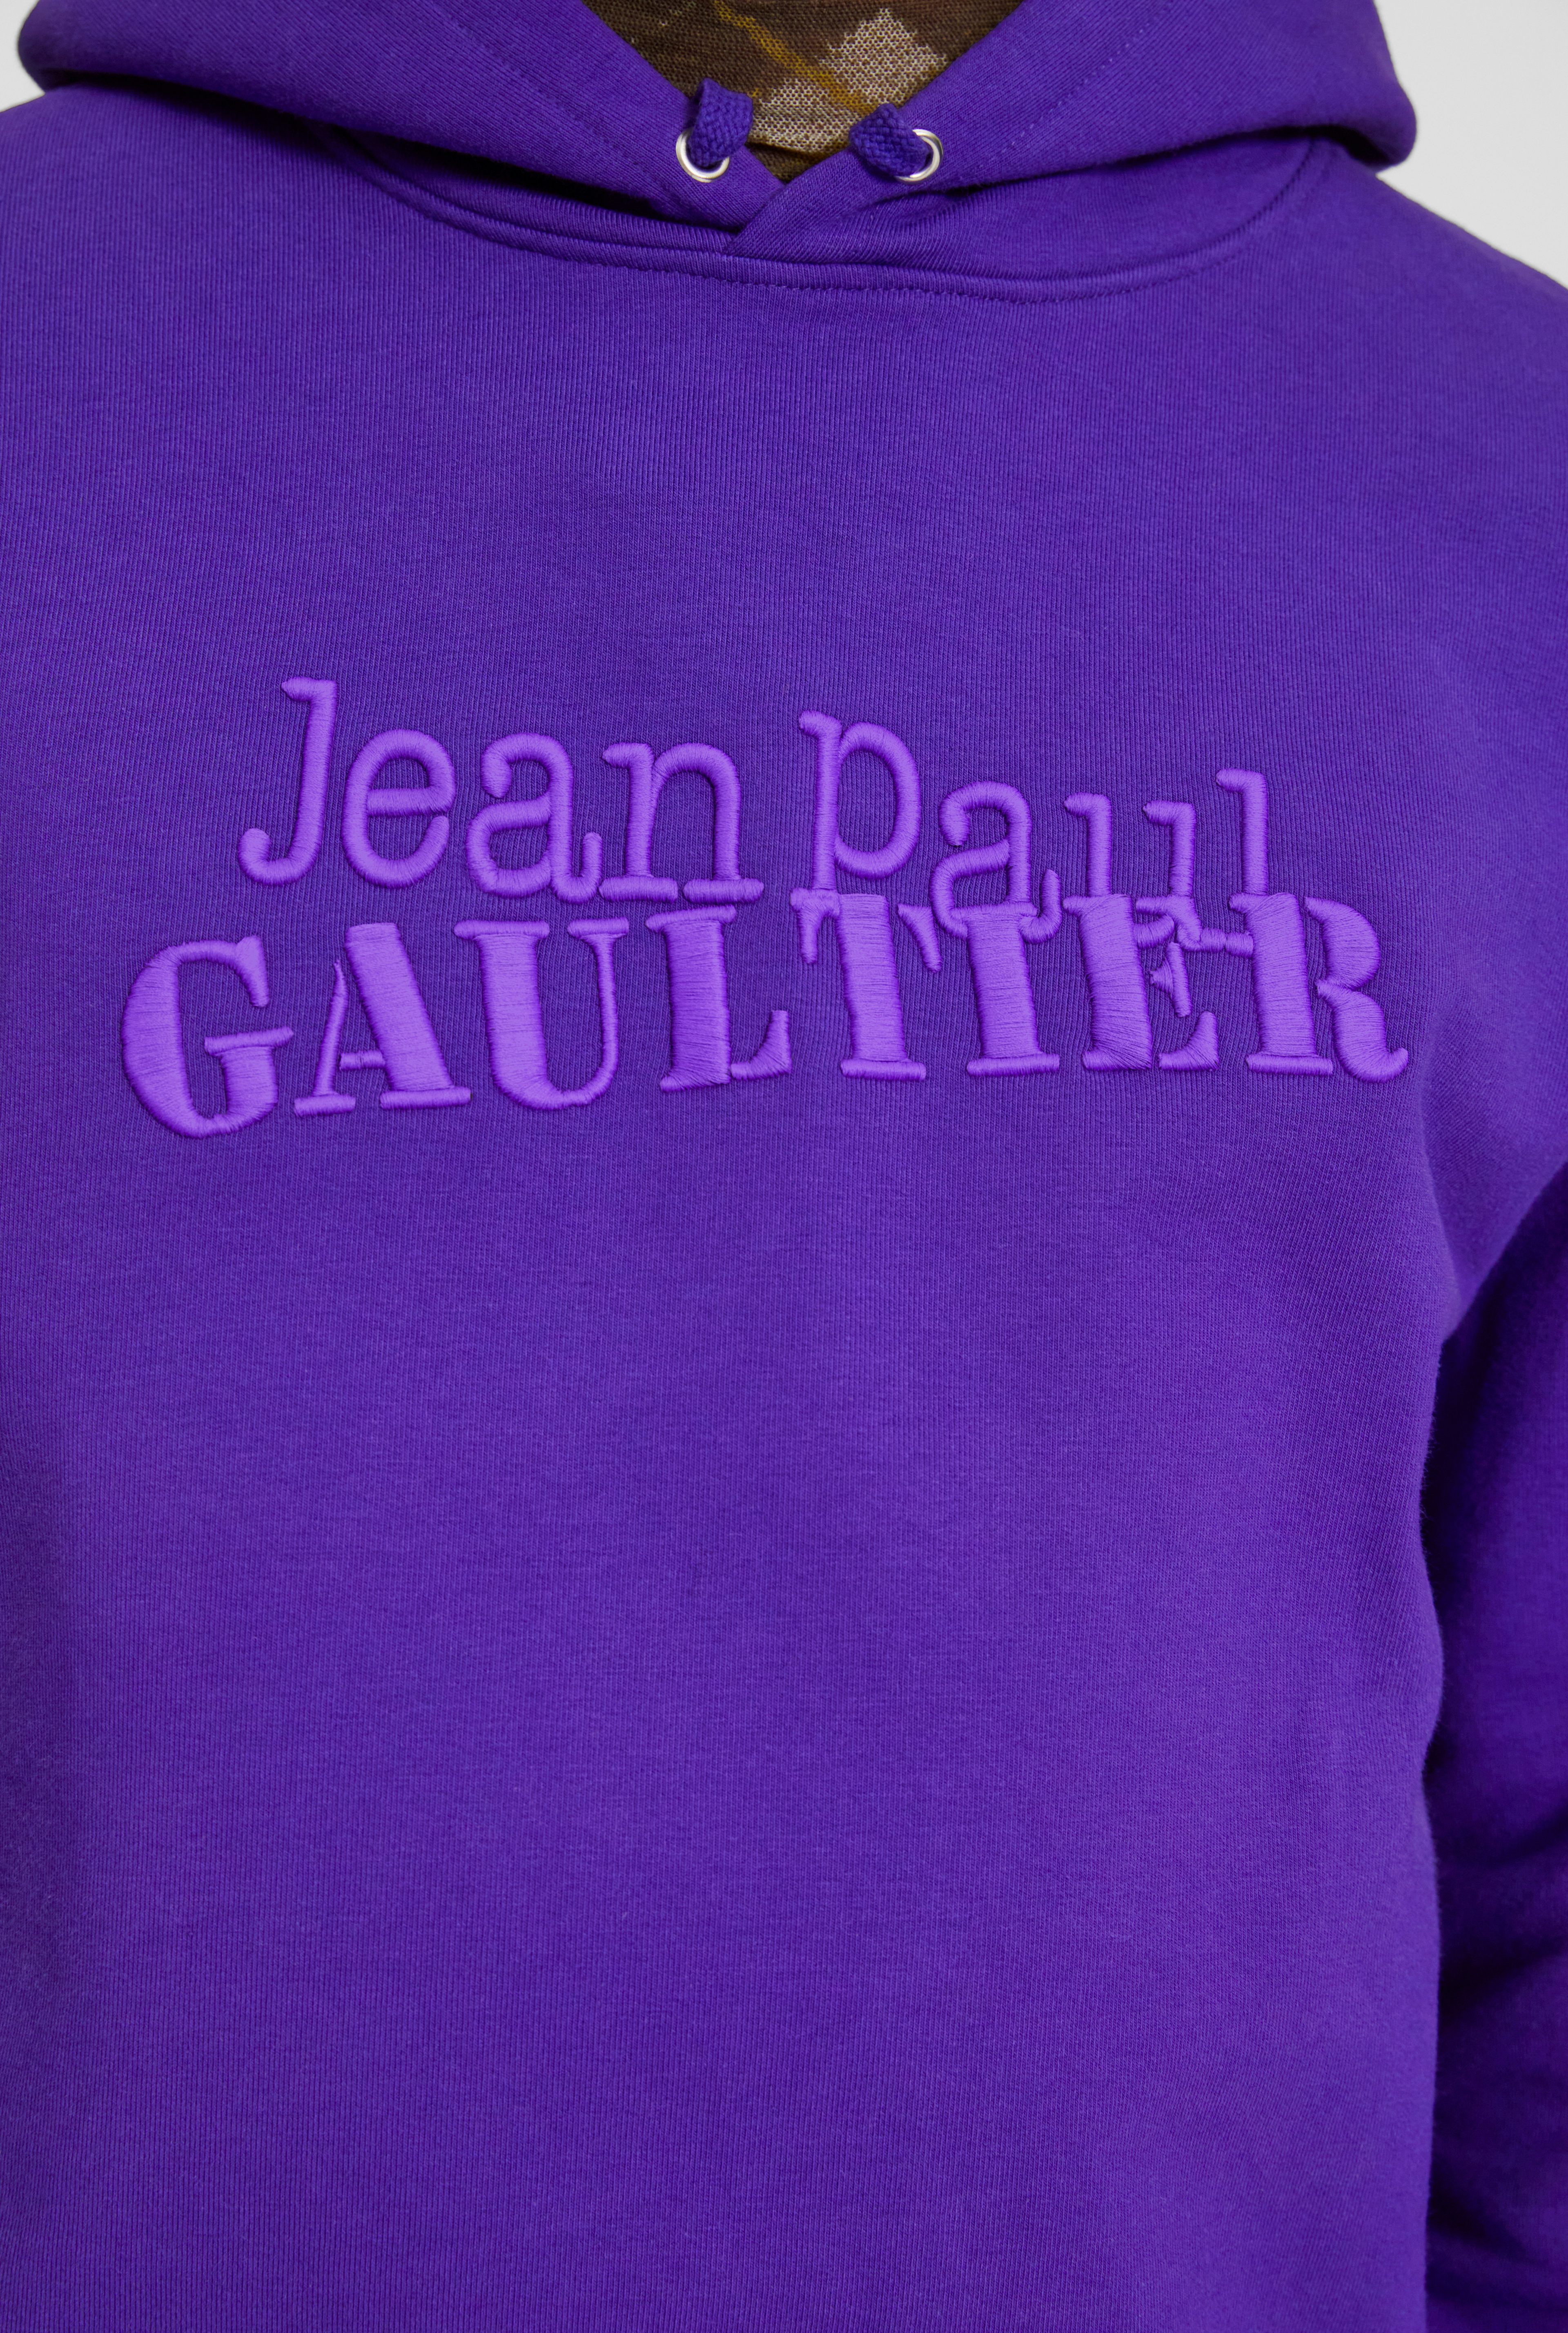 The Jean Paul Gaultier hoodie